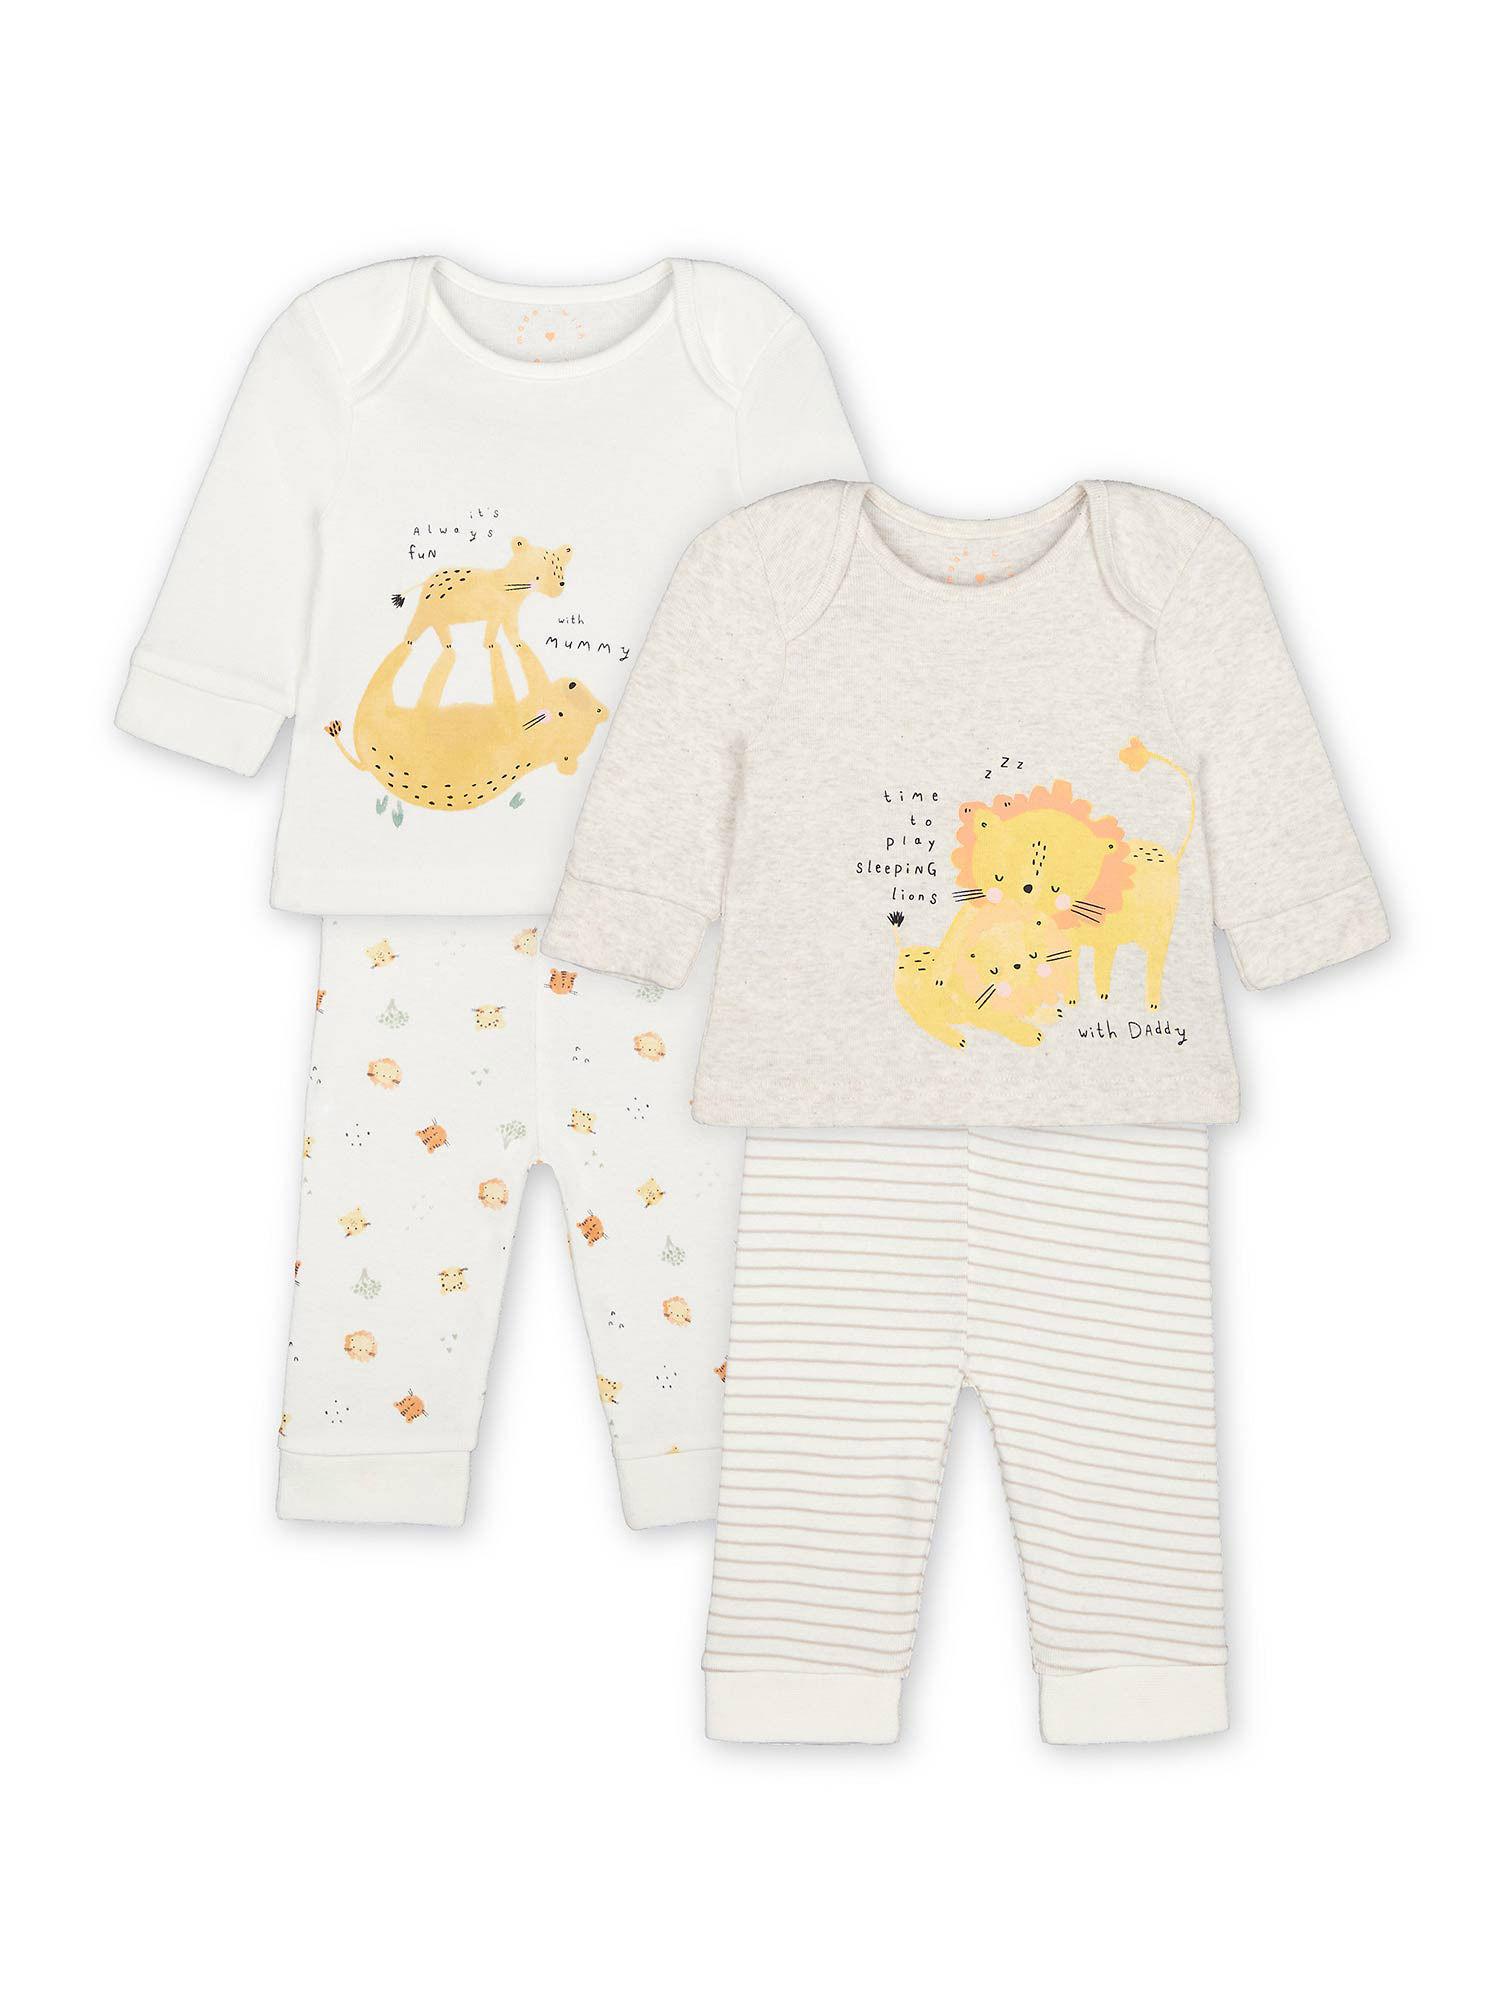 u m and d cub pyjama sets (pack of 2)